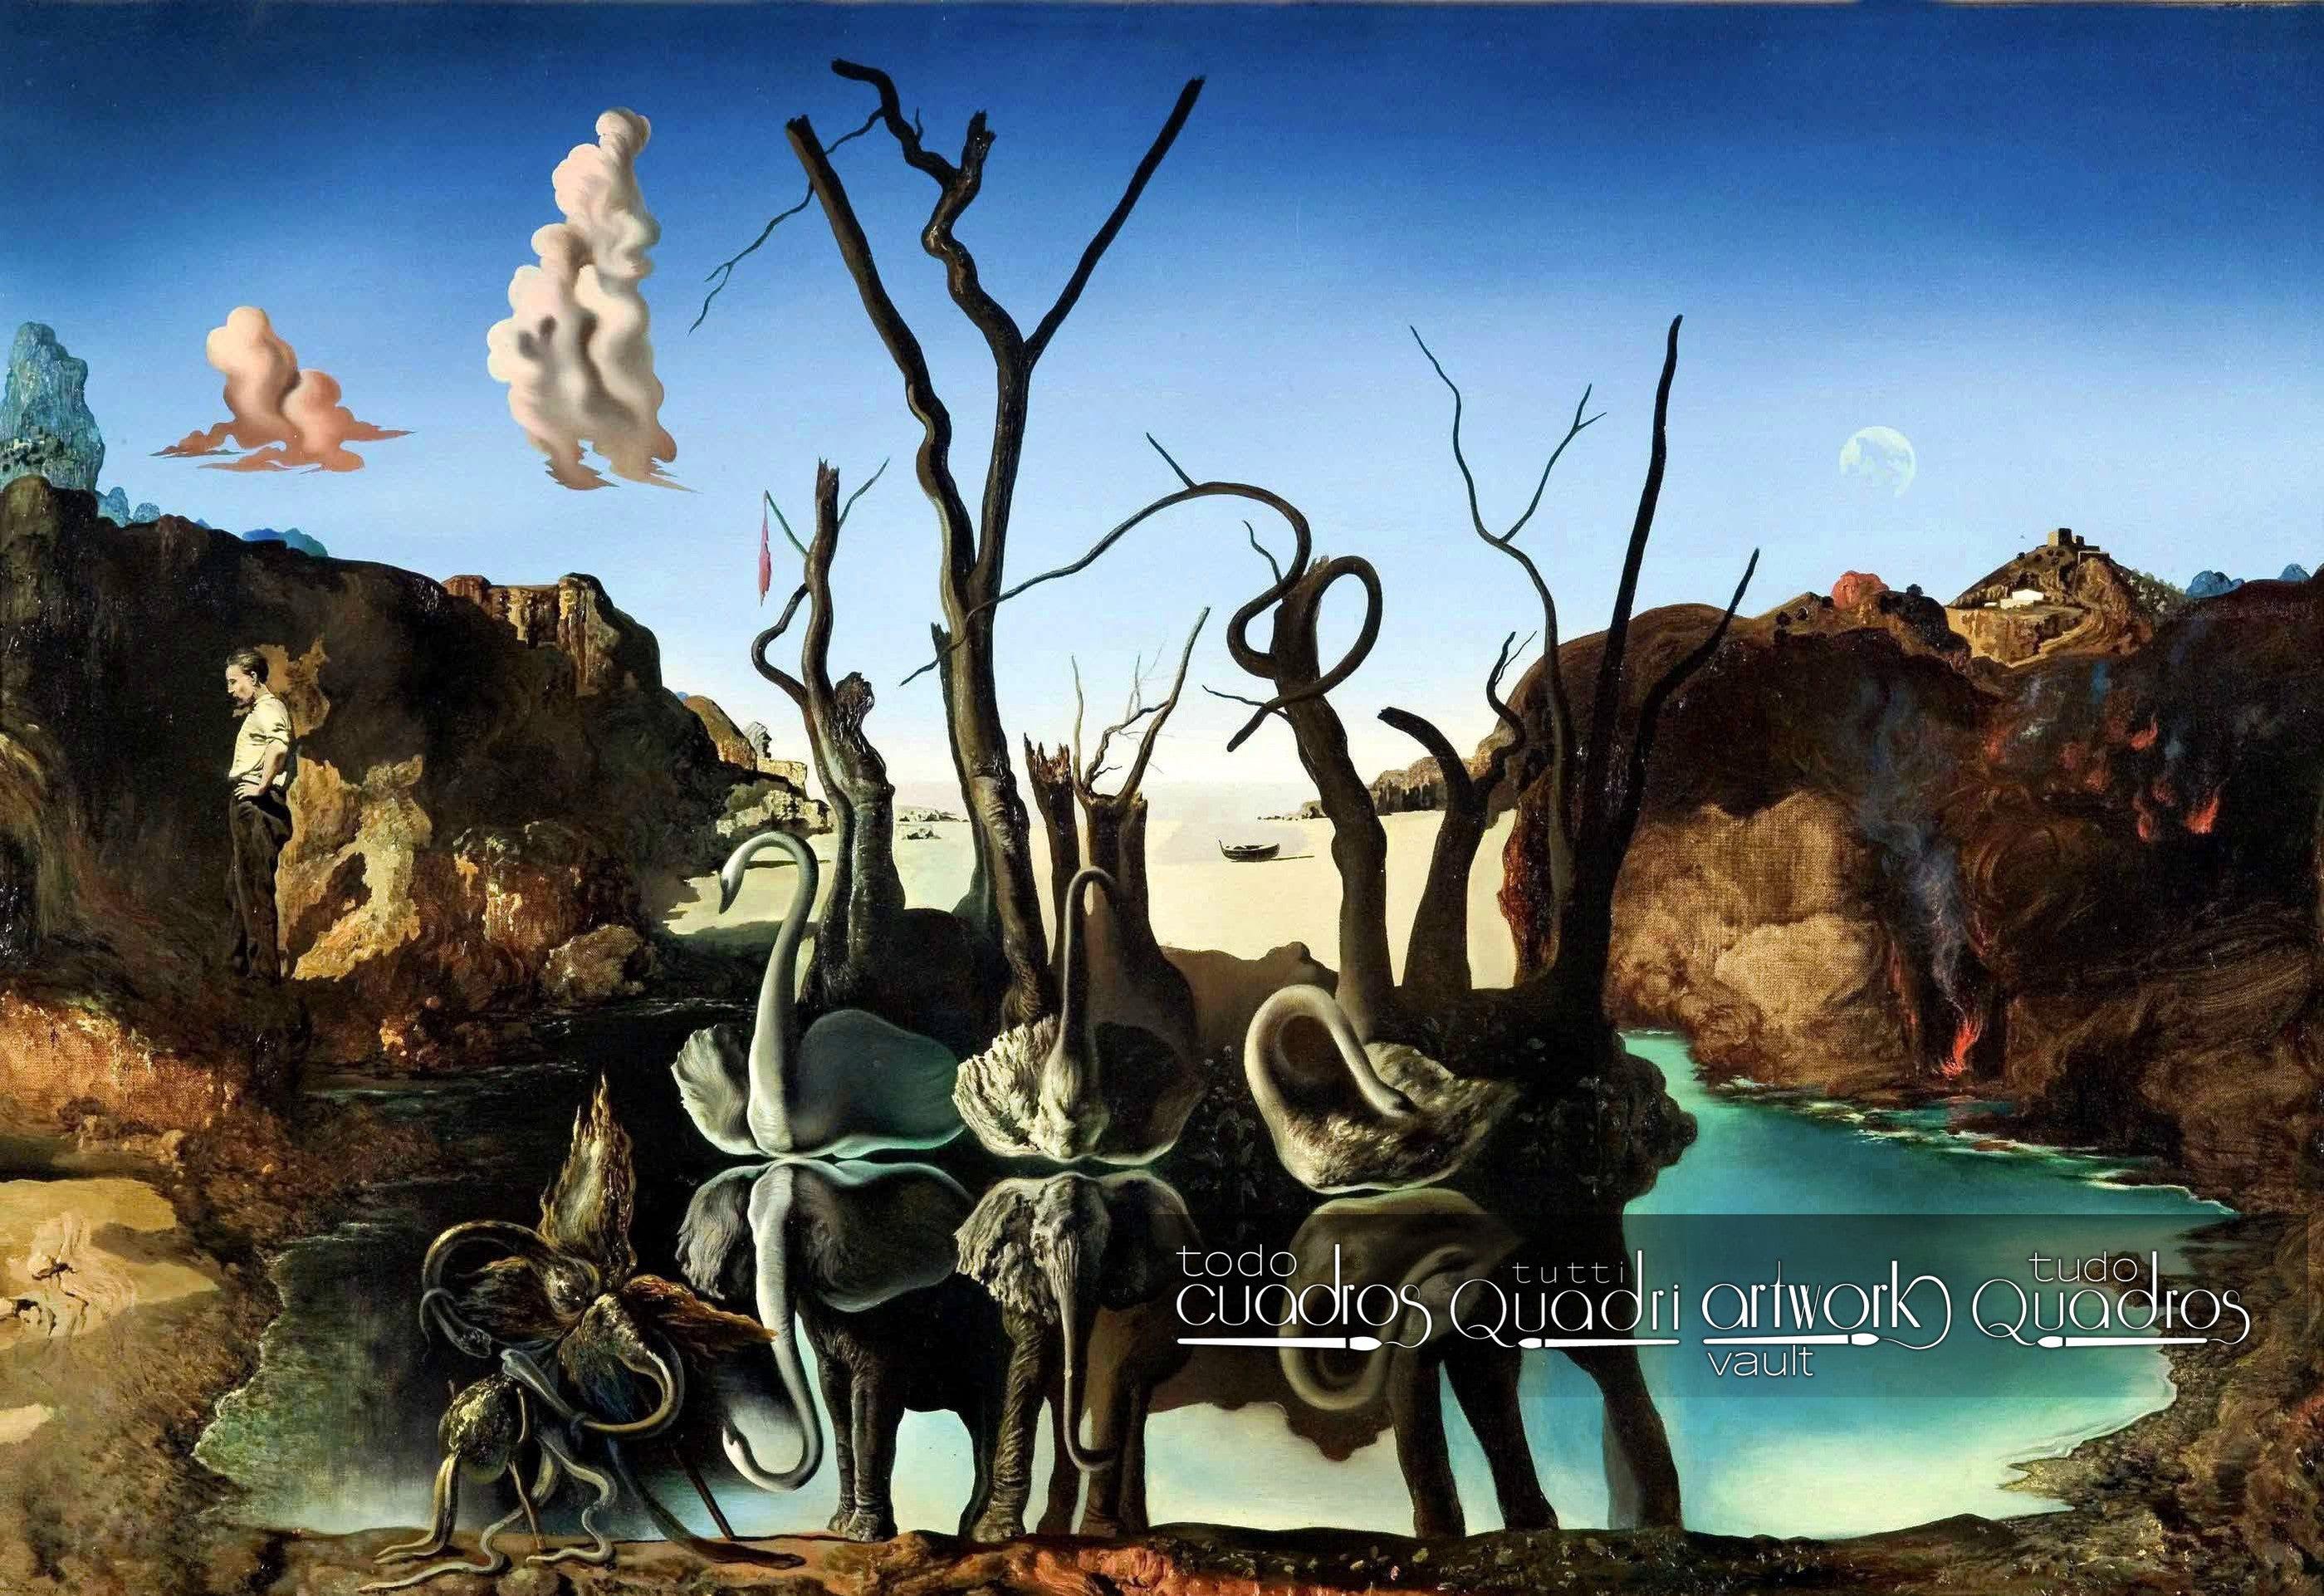 Cisnes que se reflejan como elefantes, Dalí